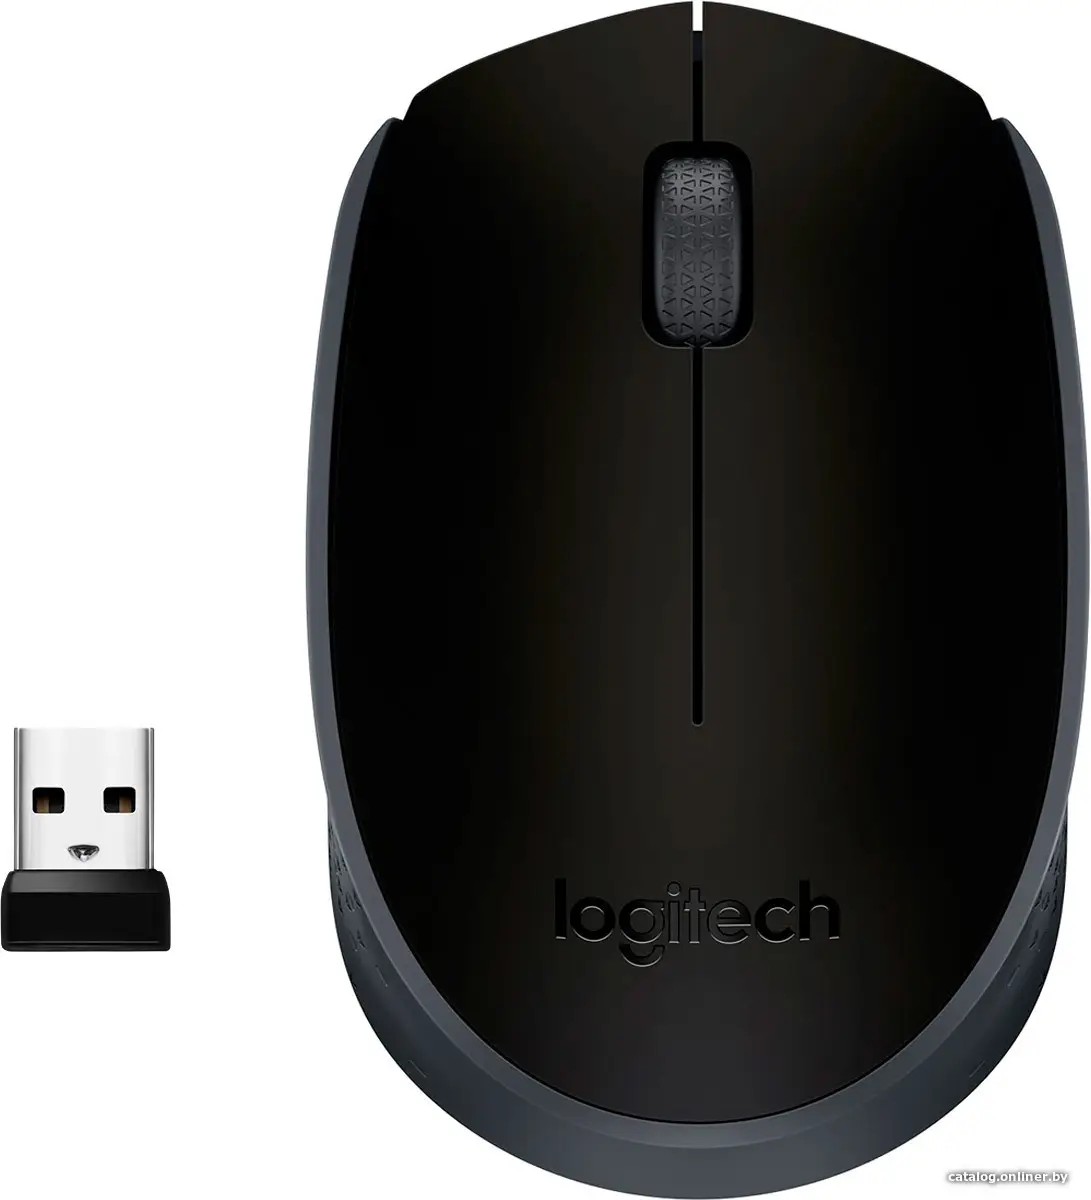 Купить Мышь Logitech M171 Wireless Mouse серый/черный [910-004424], цена, опт и розница